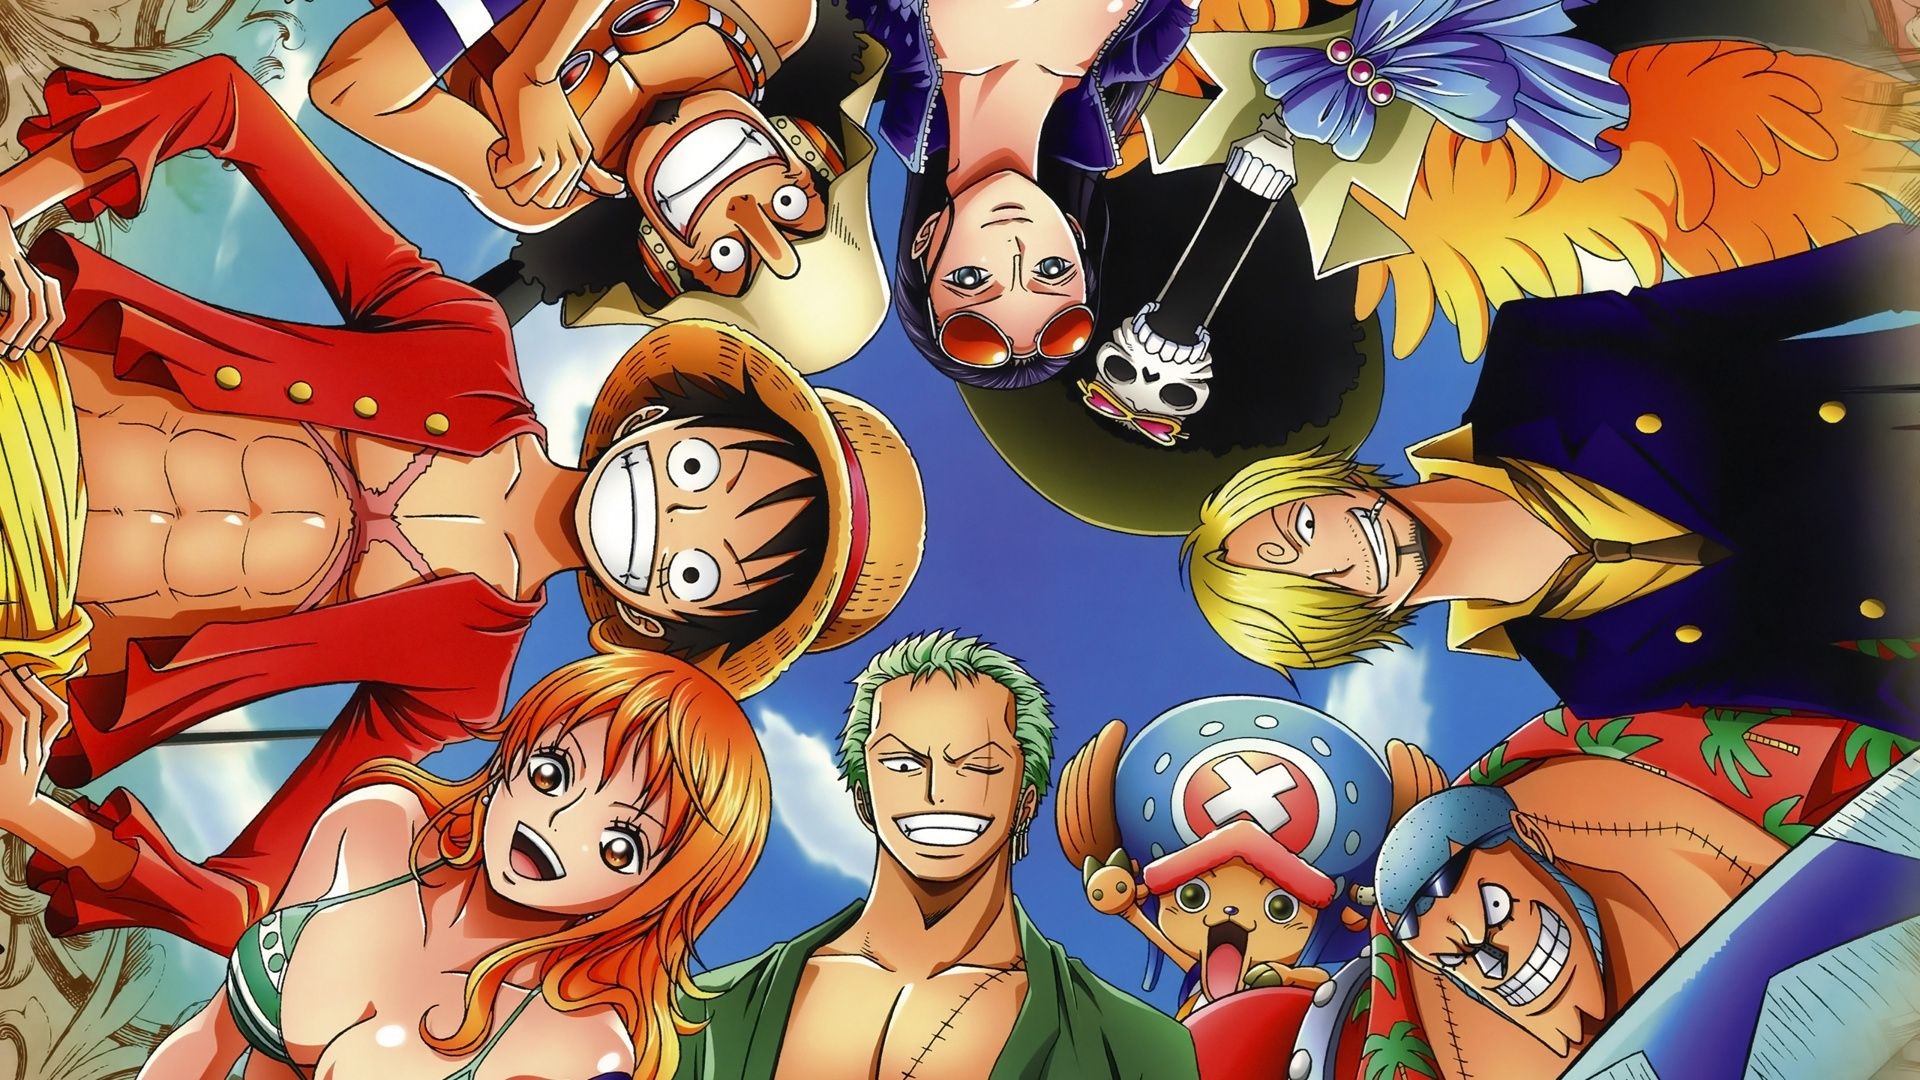 Bạn yêu thích One Piece? Hãy đắm mình vào những hình ảnh Anime One Piece đẹp đến mê hồn này. Hình ảnh One Piece sẽ khiến bạn ngất ngây với thế giới giả tưởng tuyệt đẹp của nó.